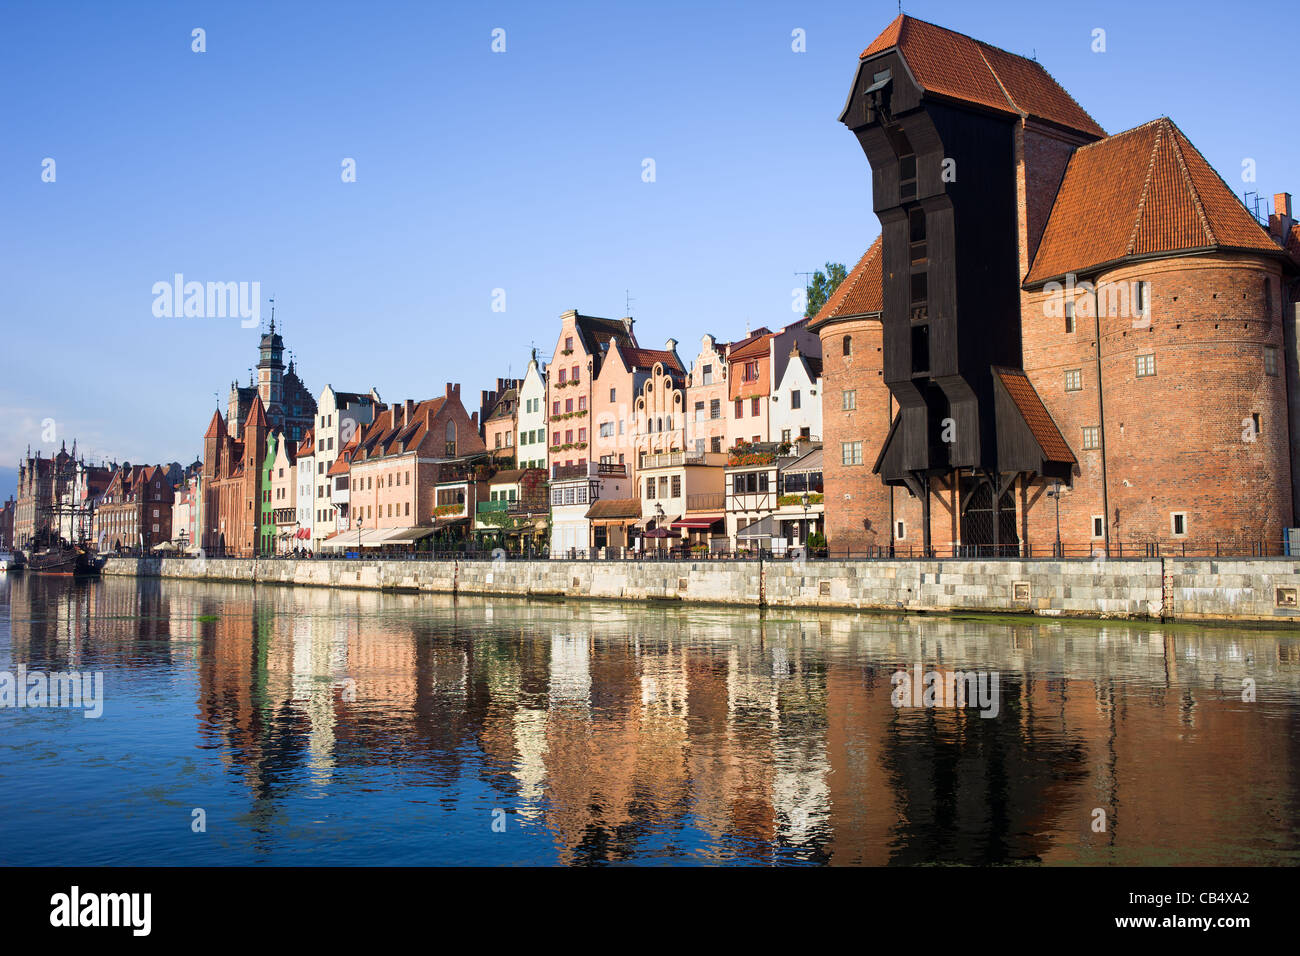 Uferpromenade von der Altstadt entlang des Flusses Mottlau in Danzig, Polen, auf der rechten Seite des Bildes der Kran (Polnisch: Zuraw) Stockfoto